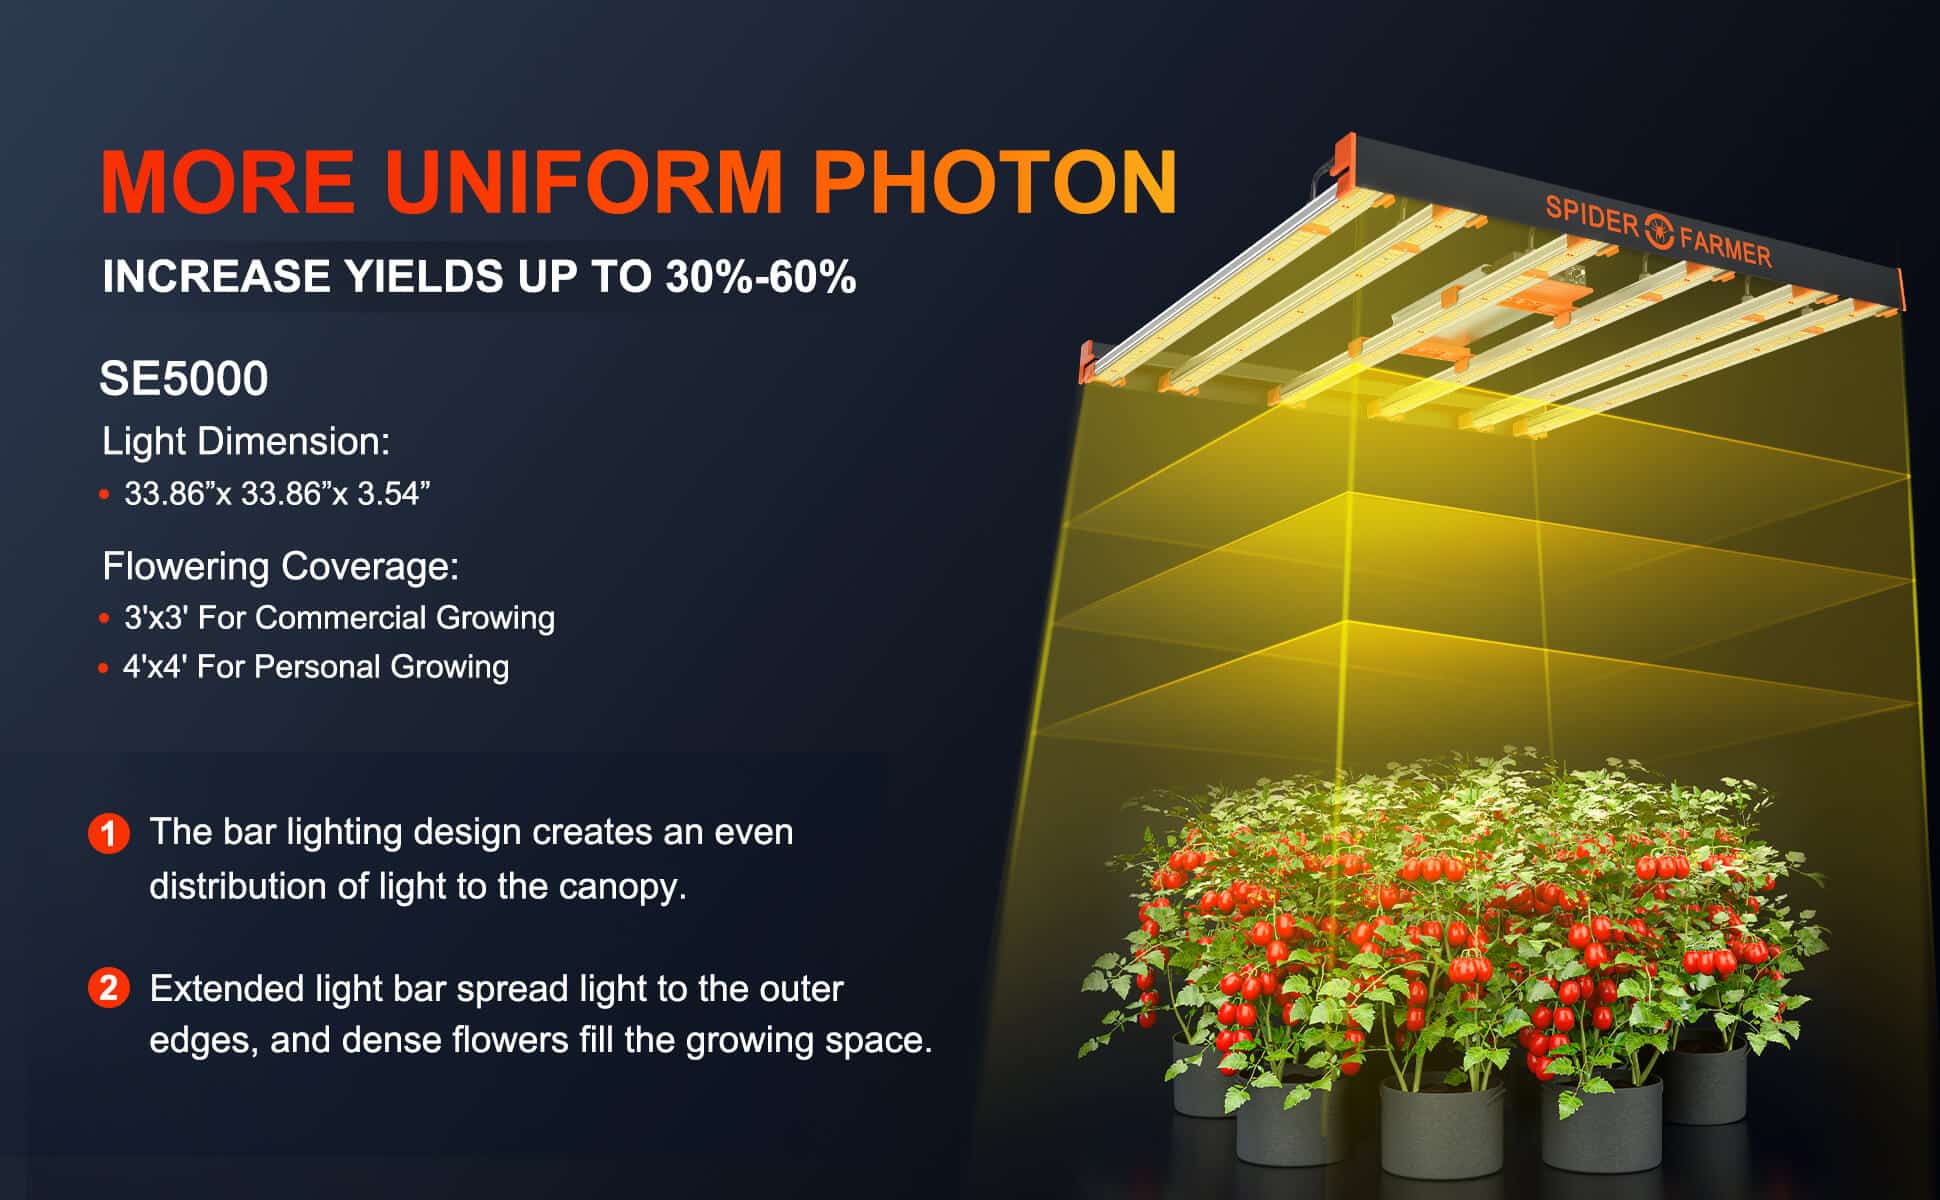 More uniform photon